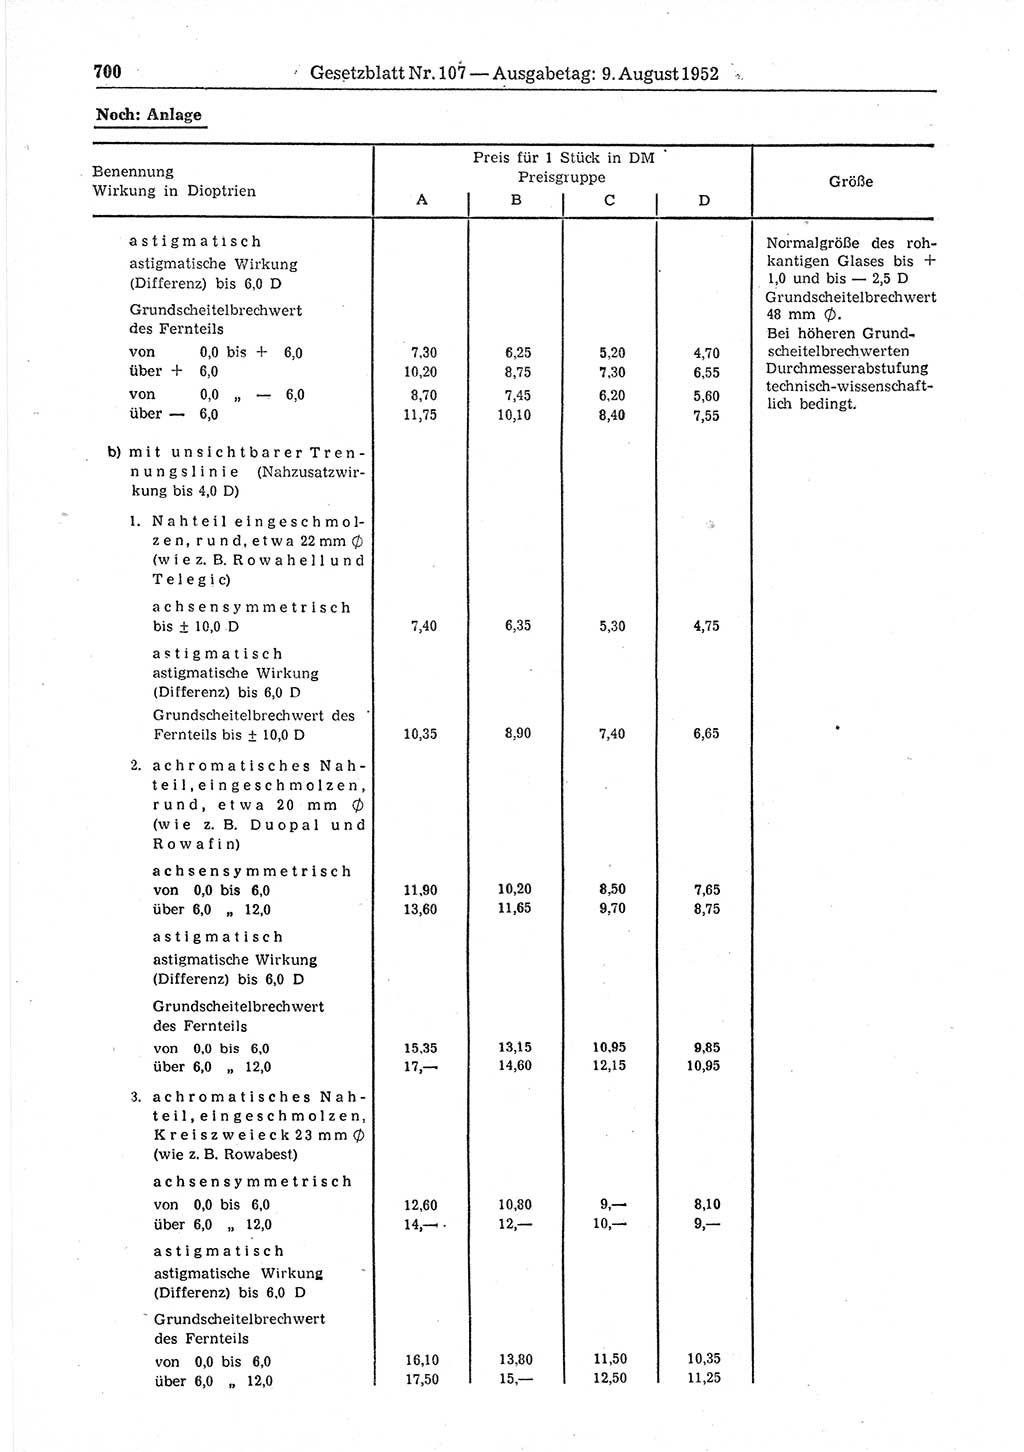 Gesetzblatt (GBl.) der Deutschen Demokratischen Republik (DDR) 1952, Seite 700 (GBl. DDR 1952, S. 700)